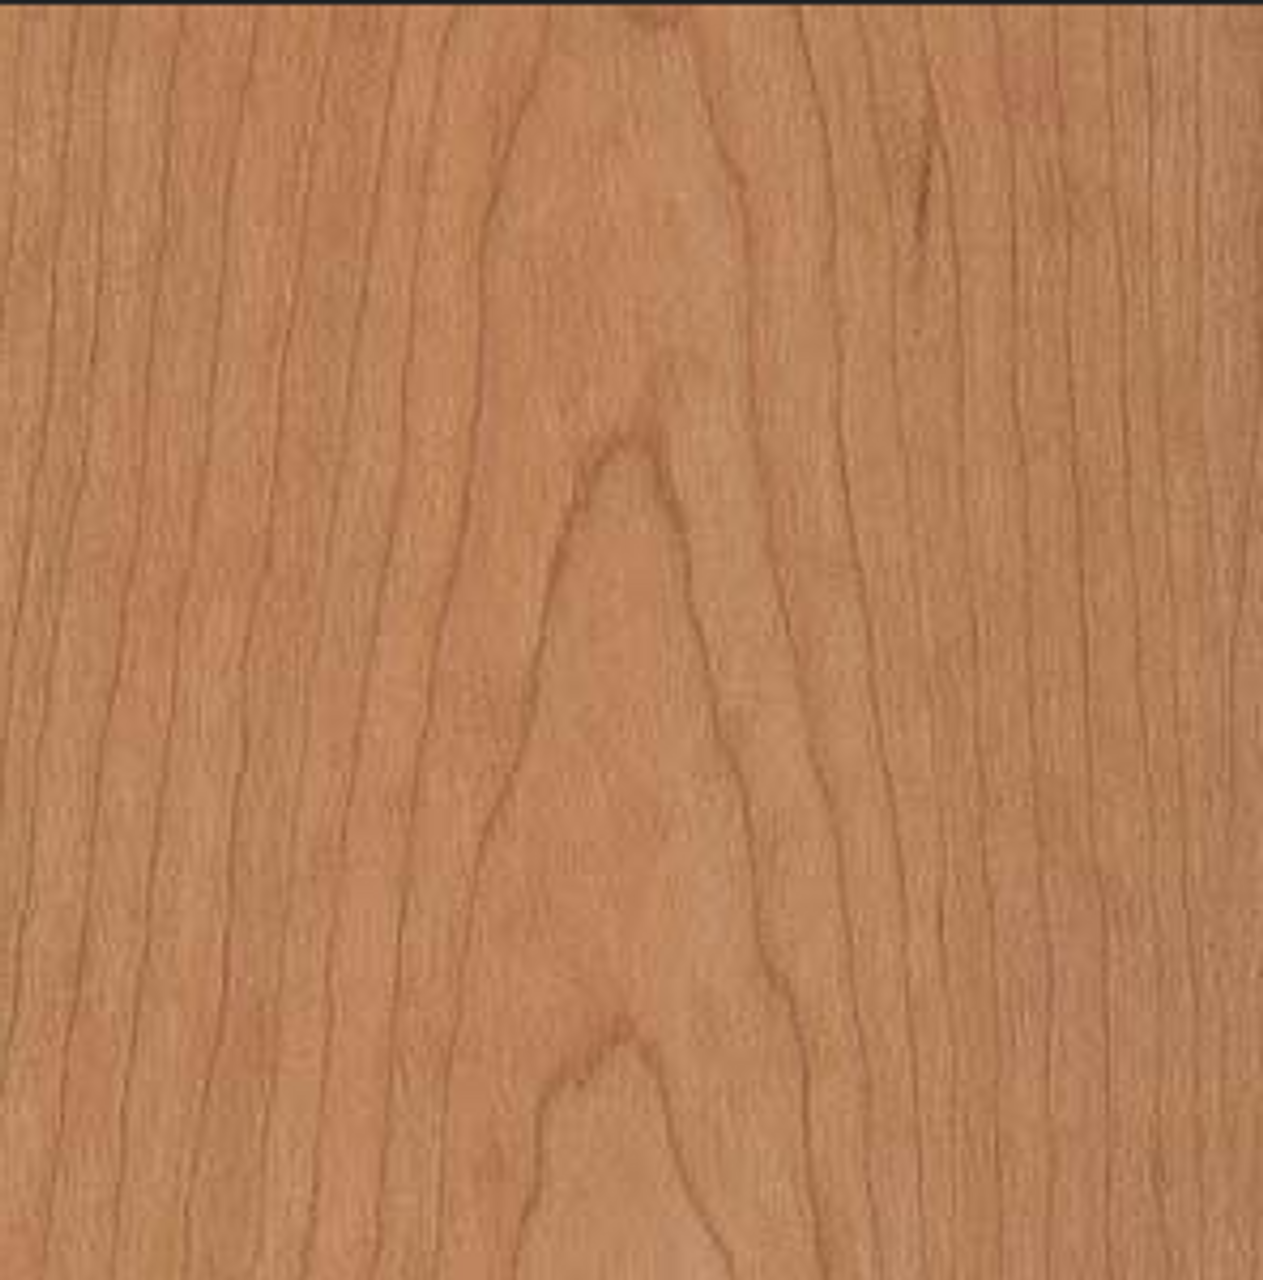 Do the edges of the 2 ply wood backed veneer show?  Edge profile of paper backed veneer vs. wood backed veneer.